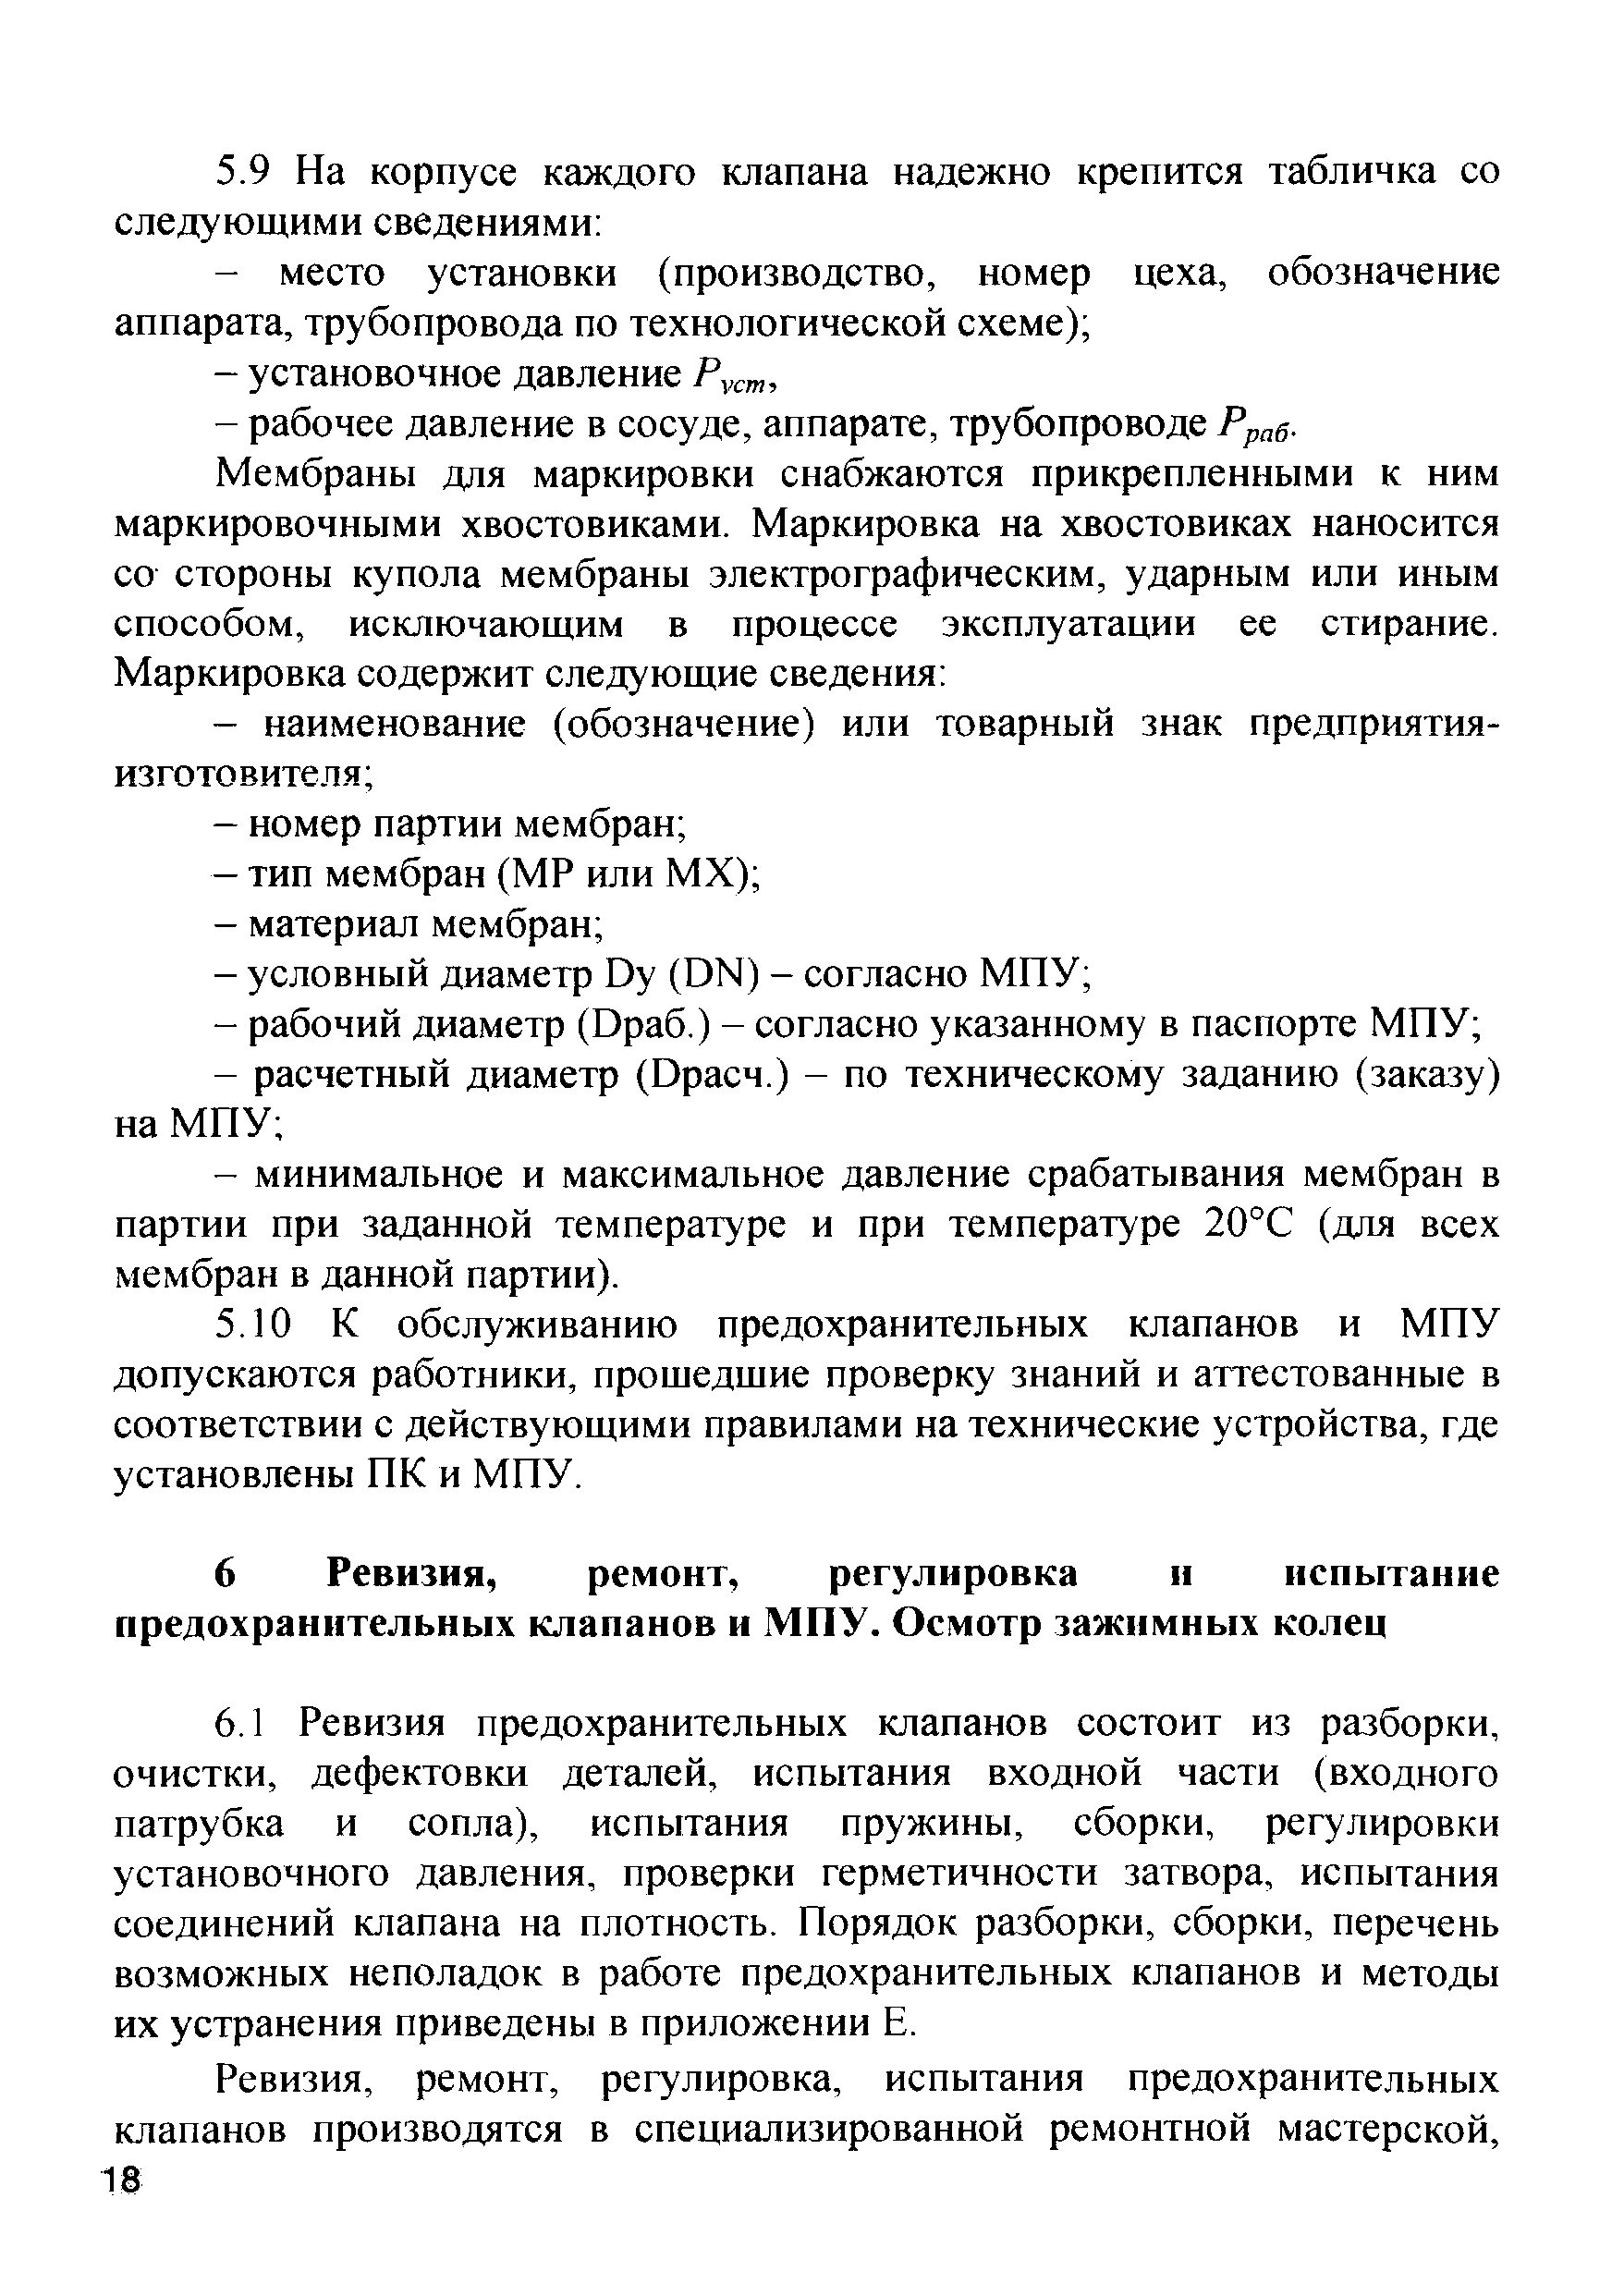 Инструкция ИПКМ-2005